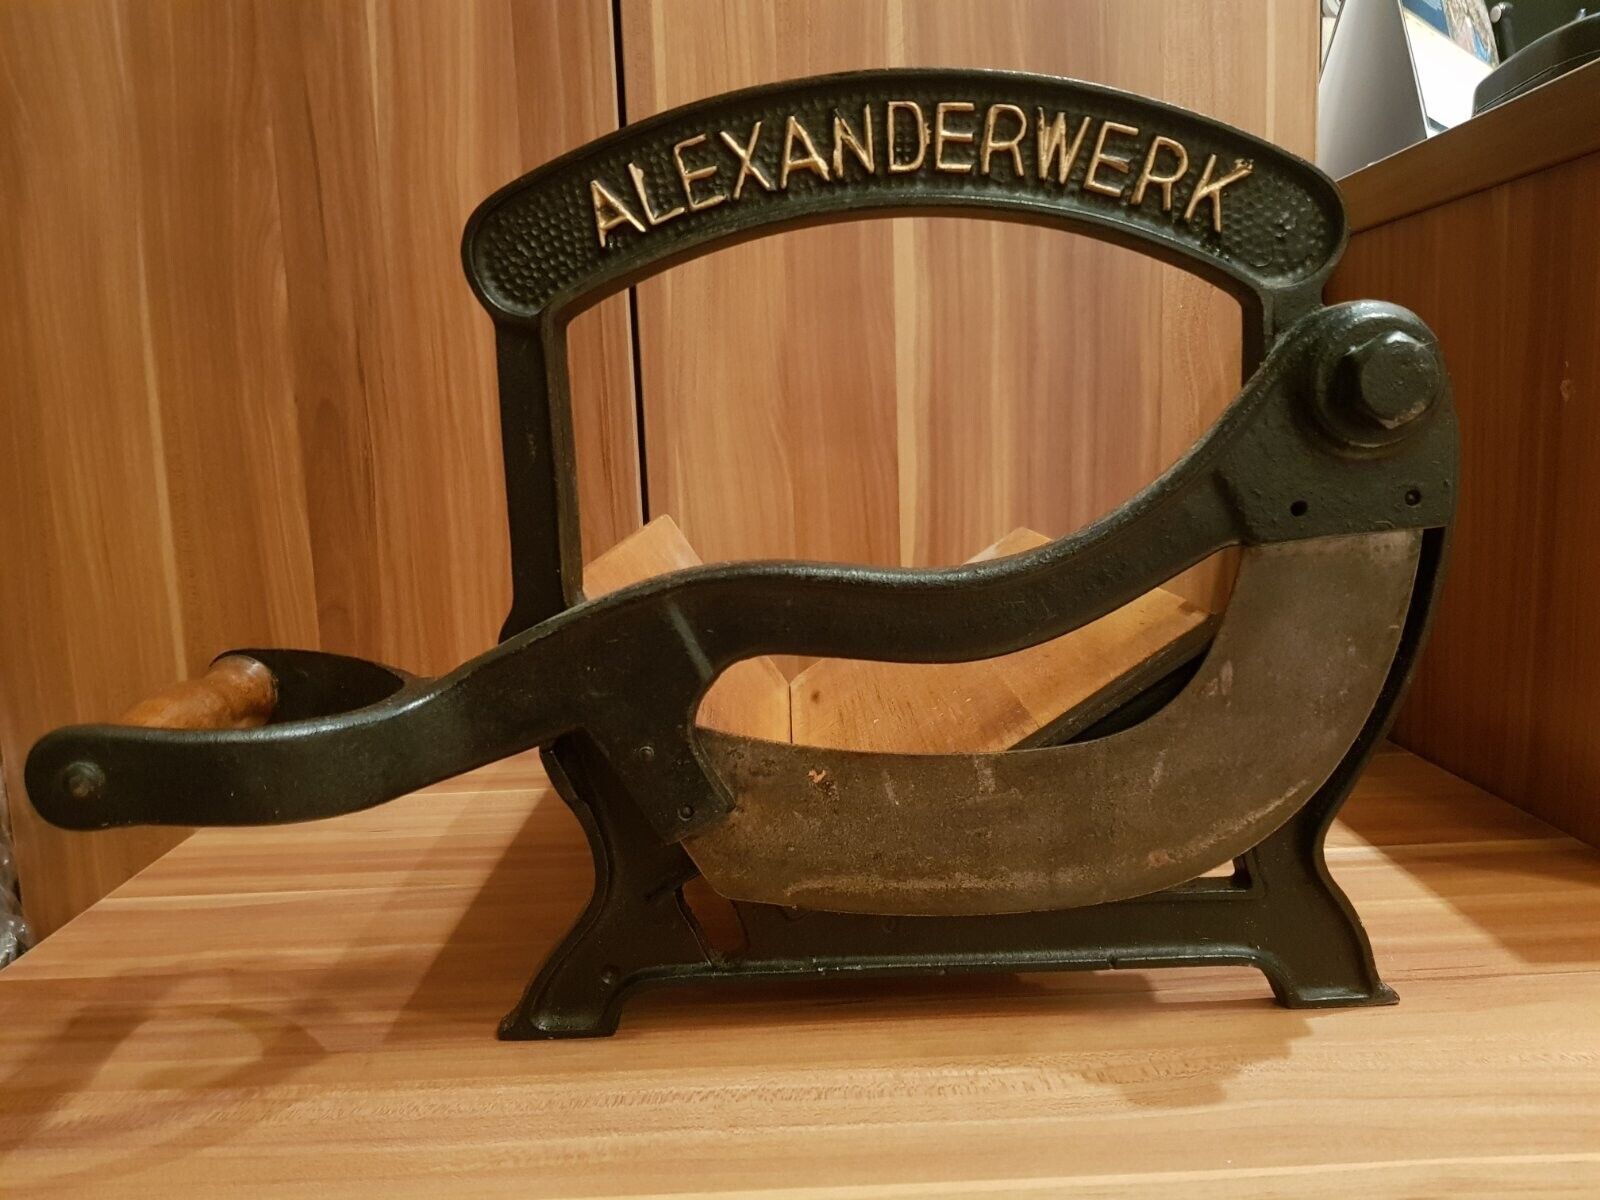 Antique Alexanderwerk RARE Bread Slicer 